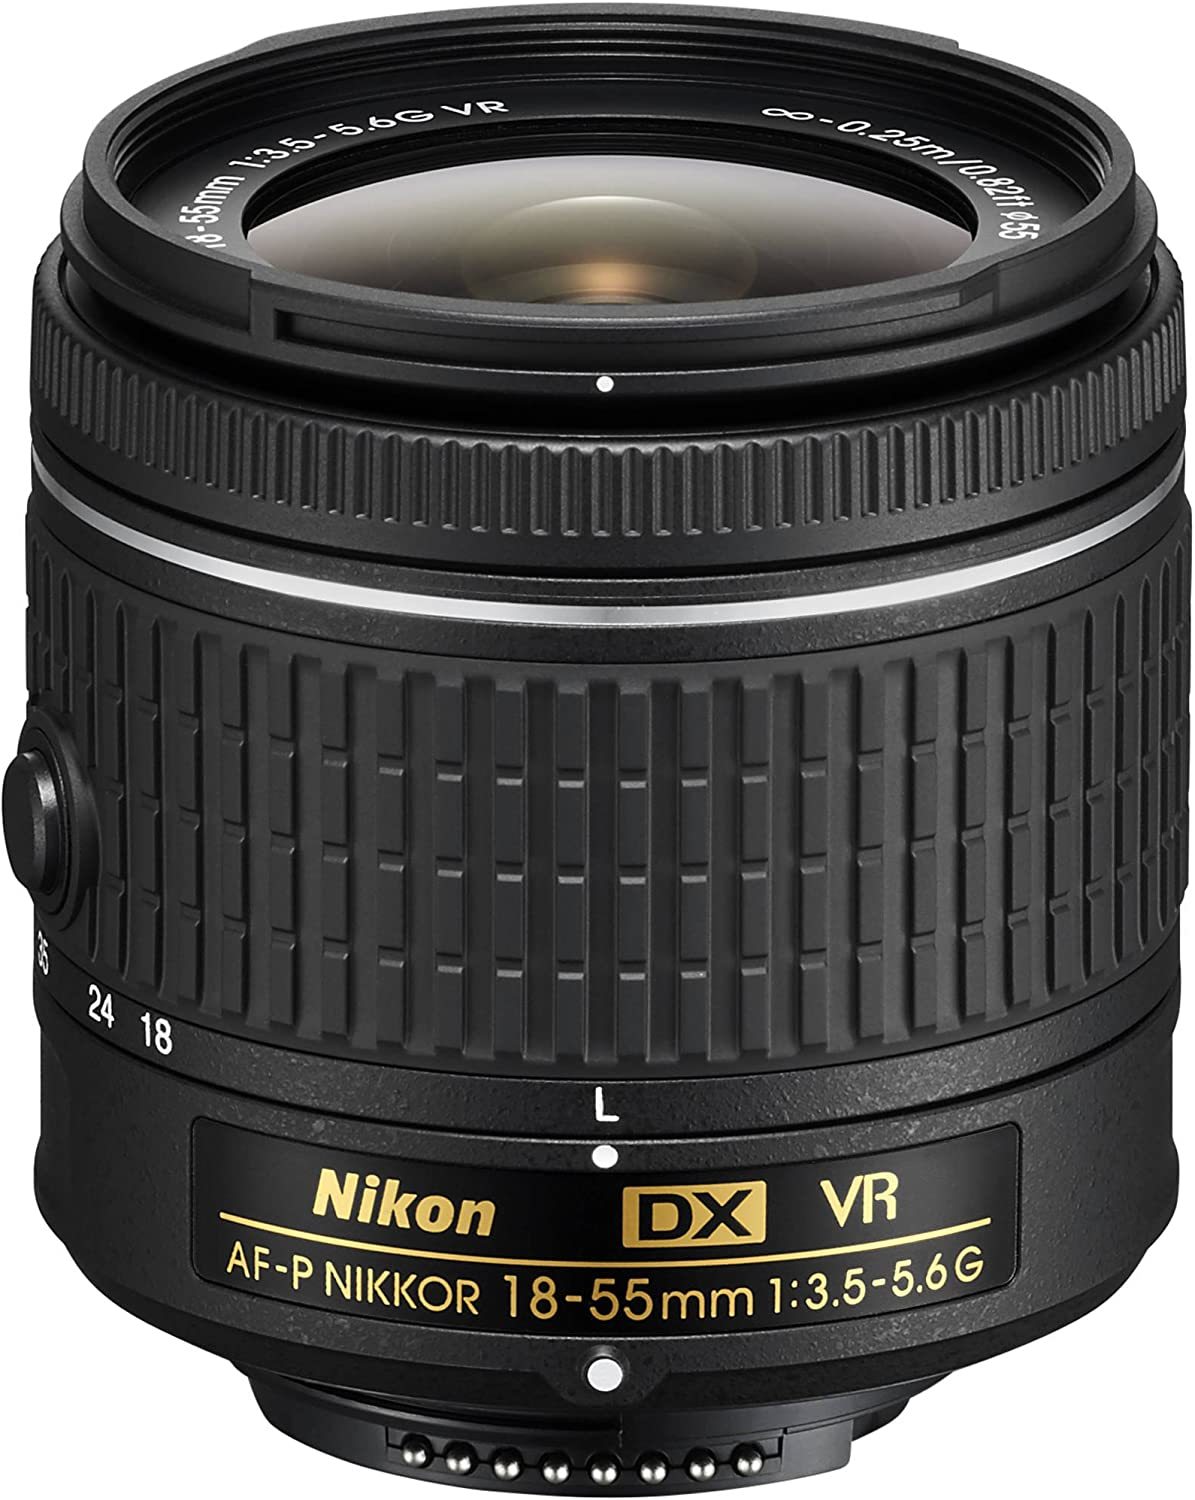 Primary image for Zoom-Nikkor Nikon 18-55Mm F/3.5-5.6G Vr Af-P Dx Lens (Refurbished).